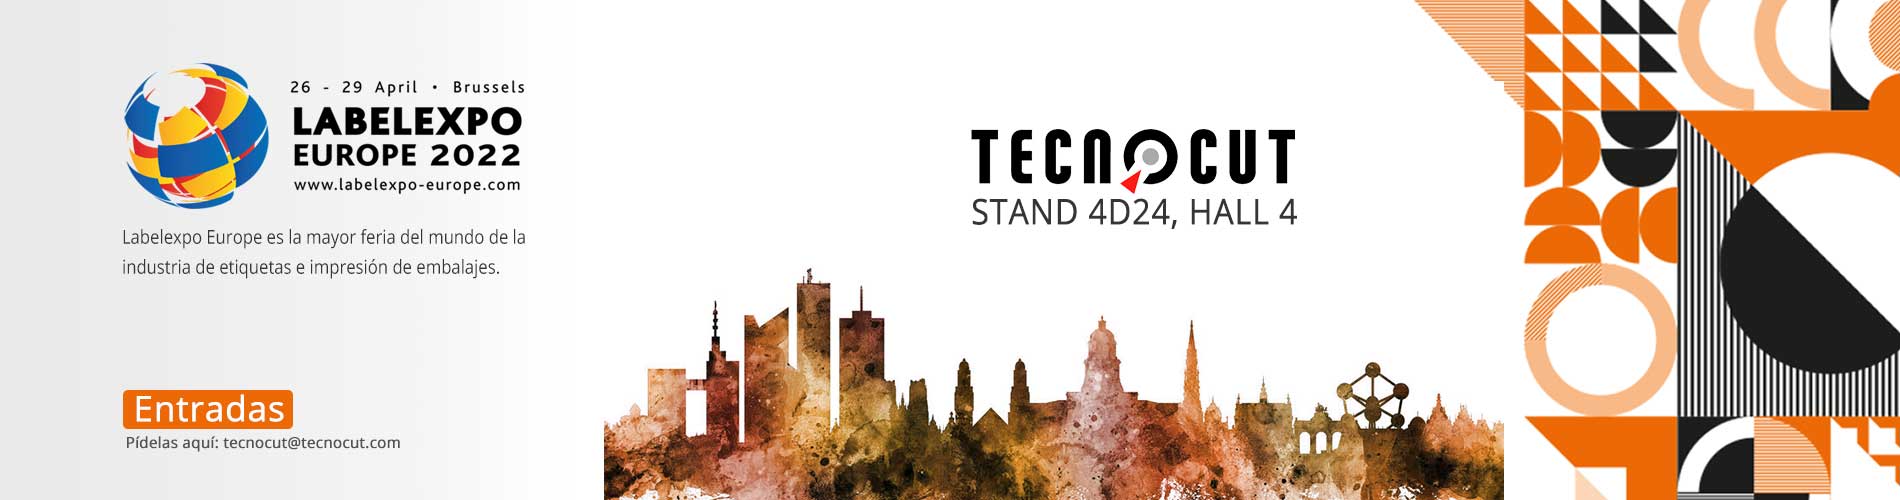 Tecnocut en Label Expo 2022